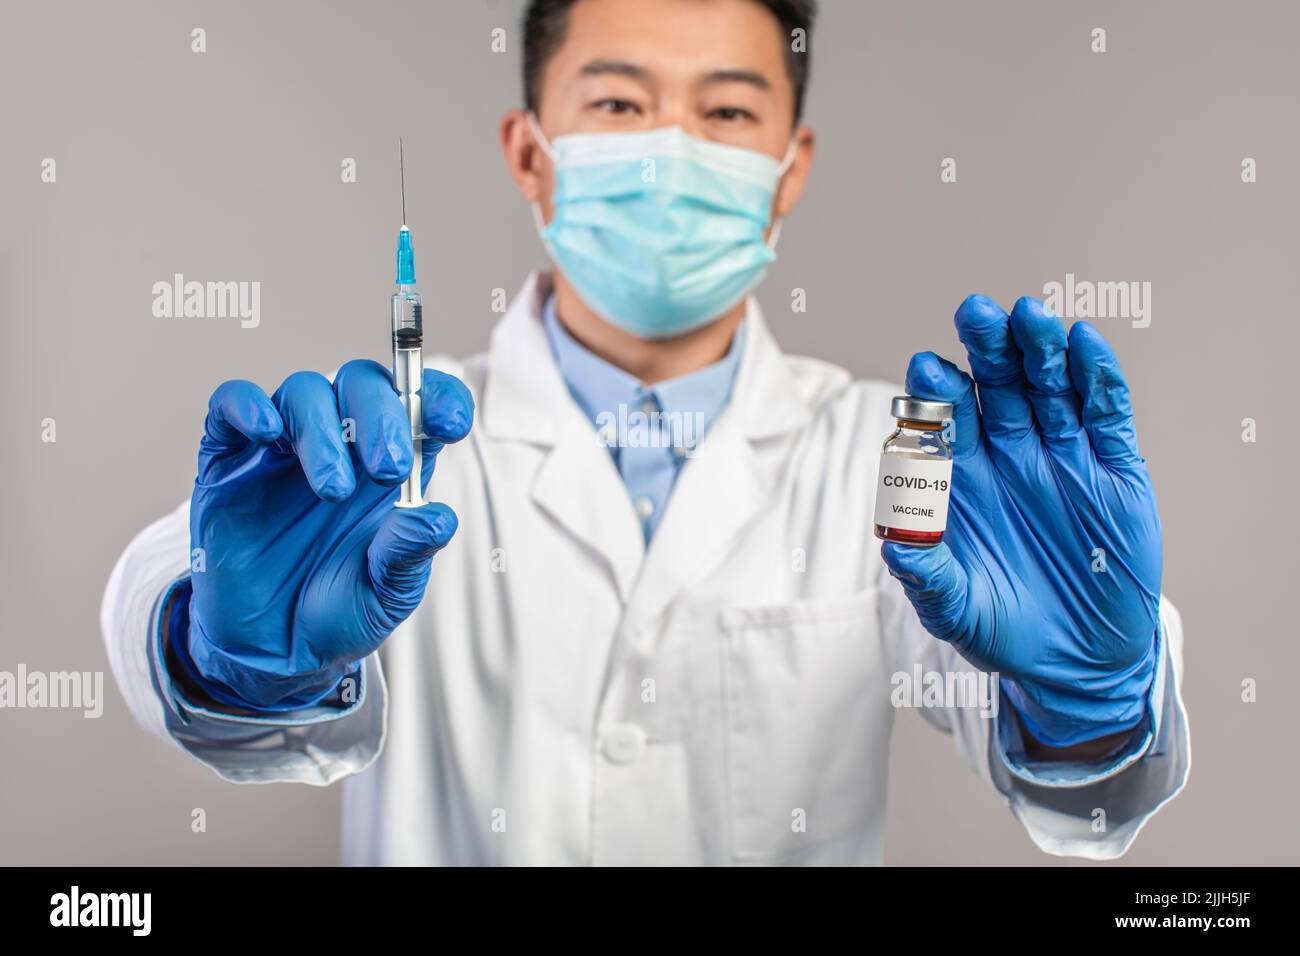 Un médecin chinois sérieux adulte en manteau blanc, masque de protection, gants montre une seringue et un vaccin Banque D'Images